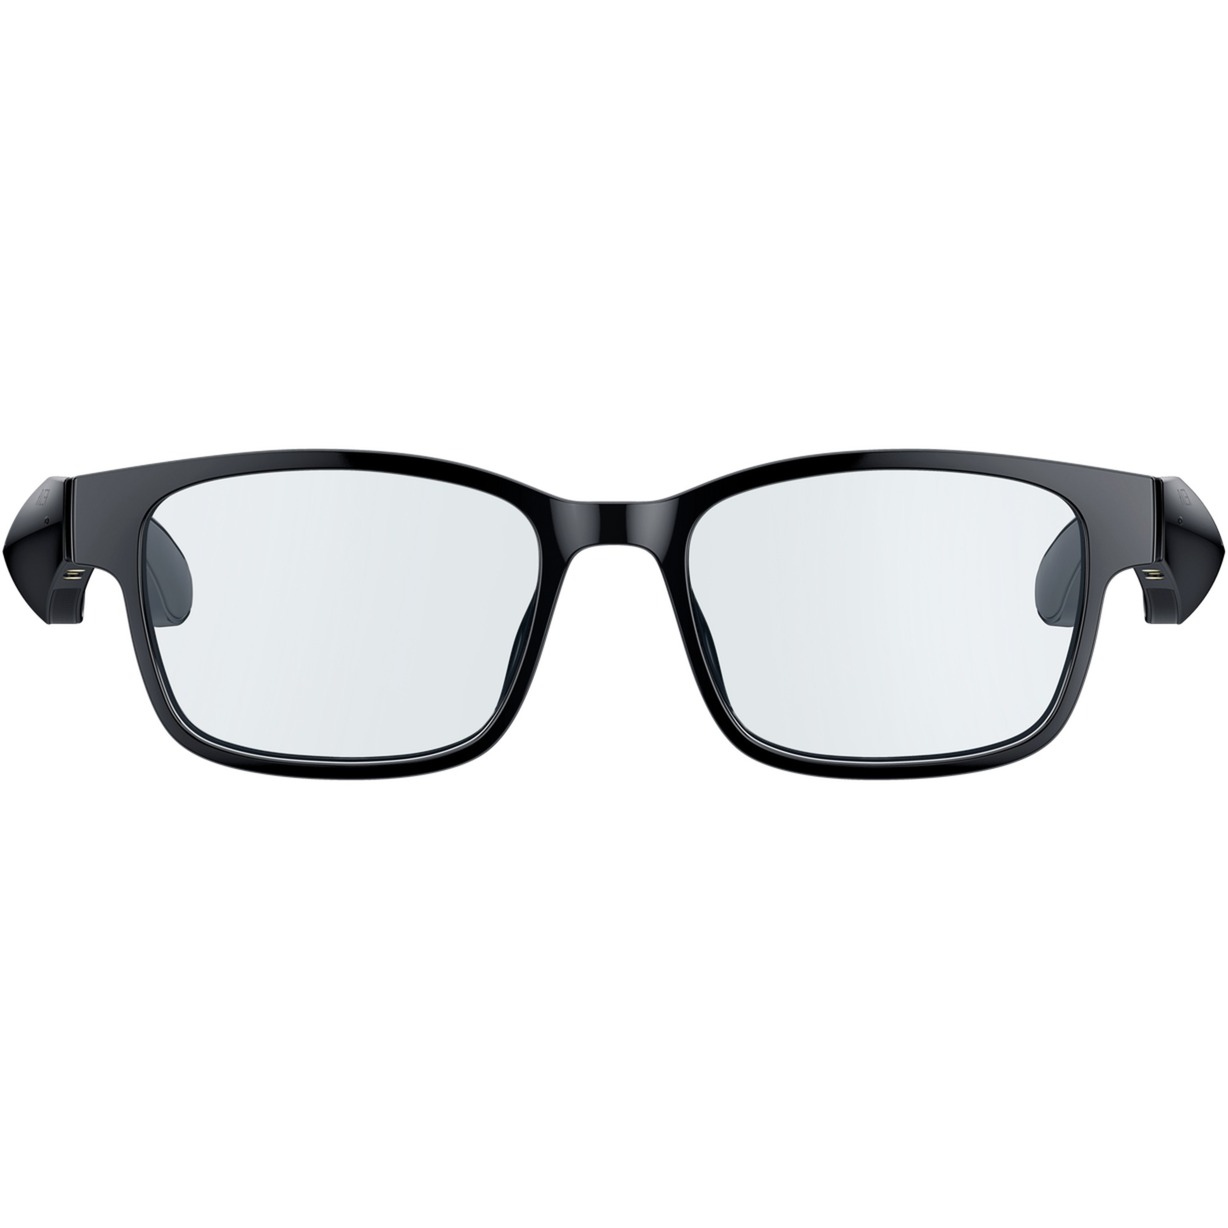 Image of Alternate - Anzu Smart Glasses (L, Rechteckig), Multimedia-Brille online einkaufen bei Alternate